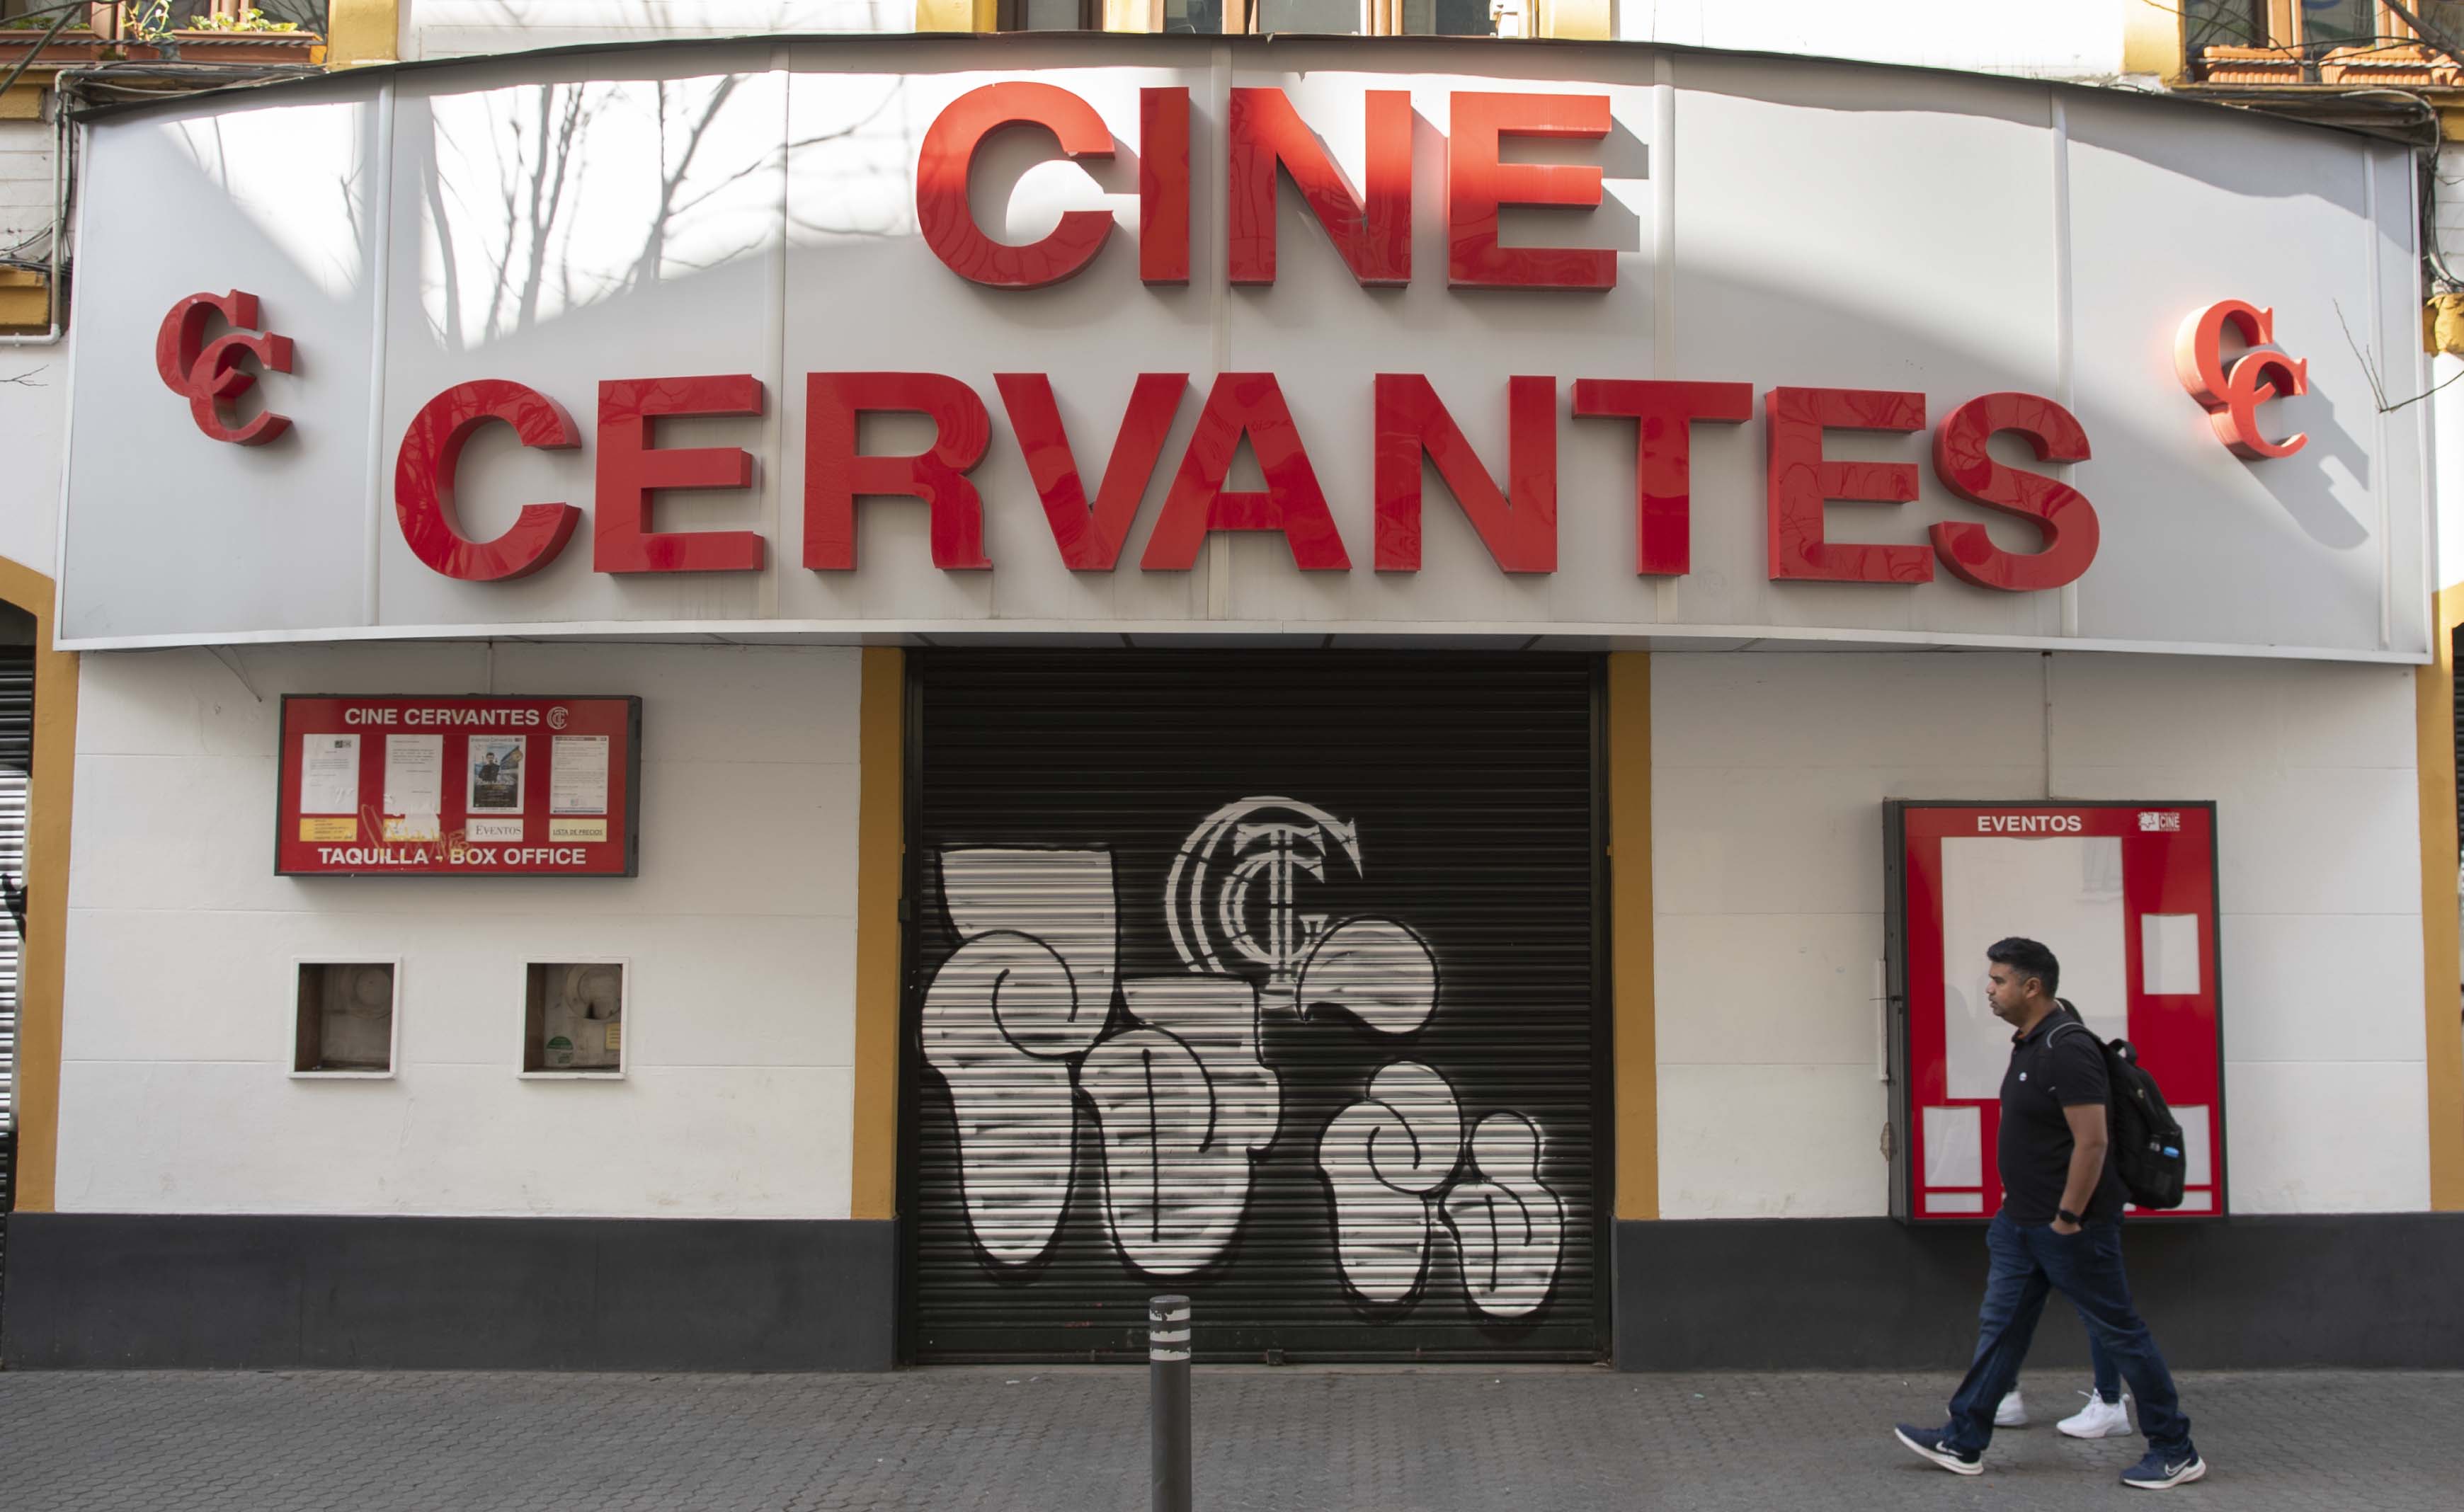 La fachada del Cine Cervantes, el más antiguo de Sevilla.